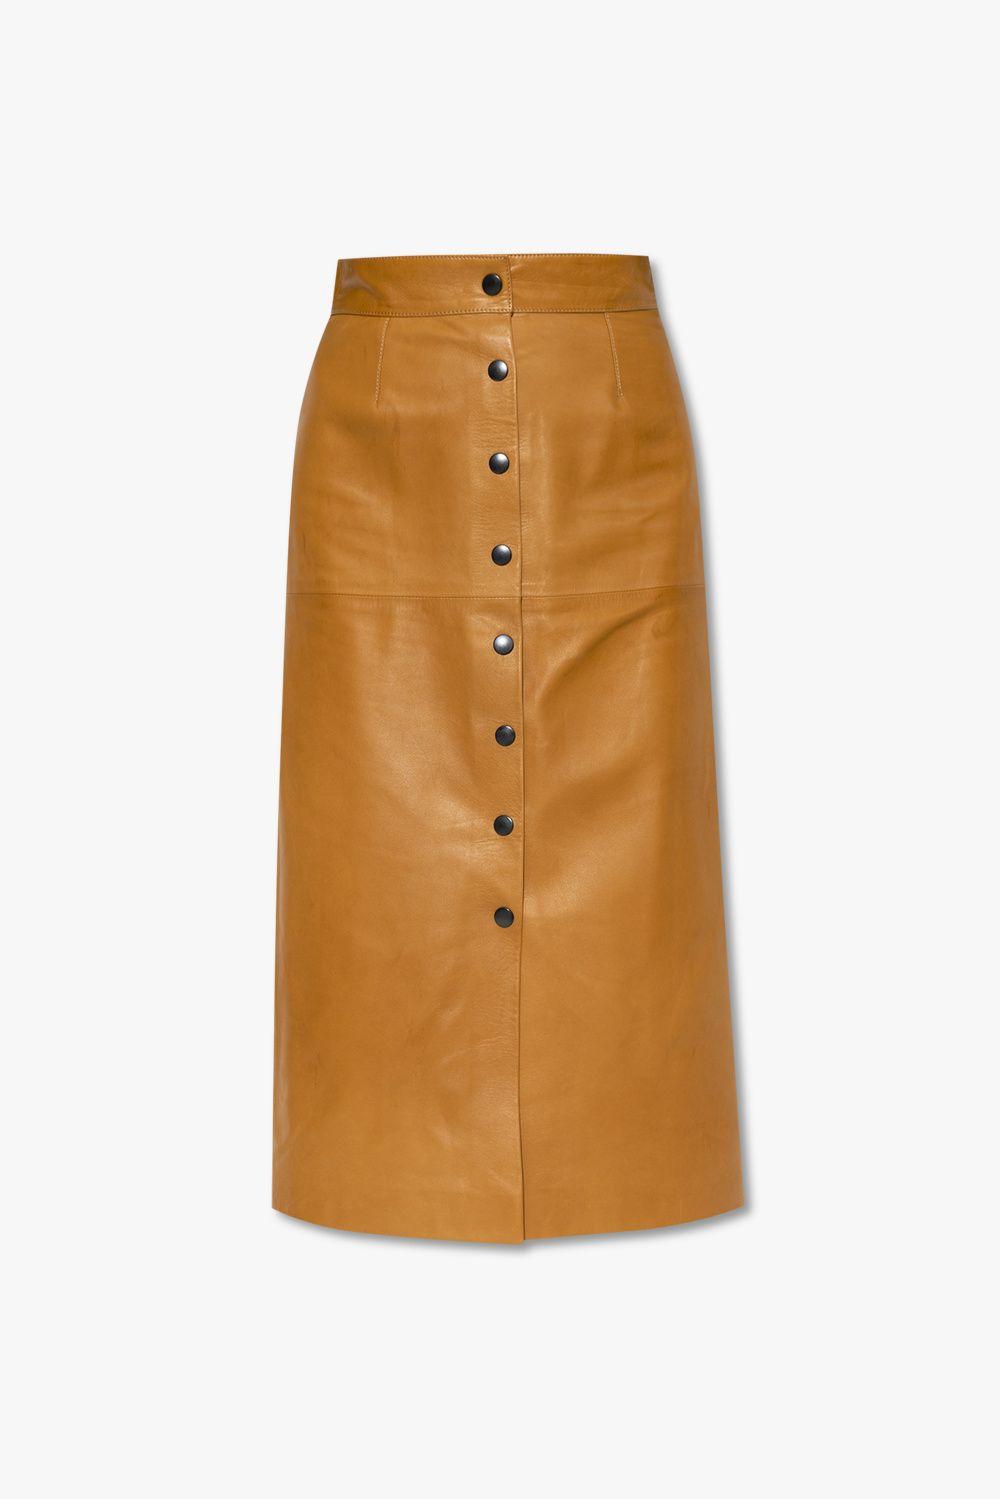 fængsel forligsmanden social Isabel Marant 'blehor' Leather Skirt in Natural | Lyst